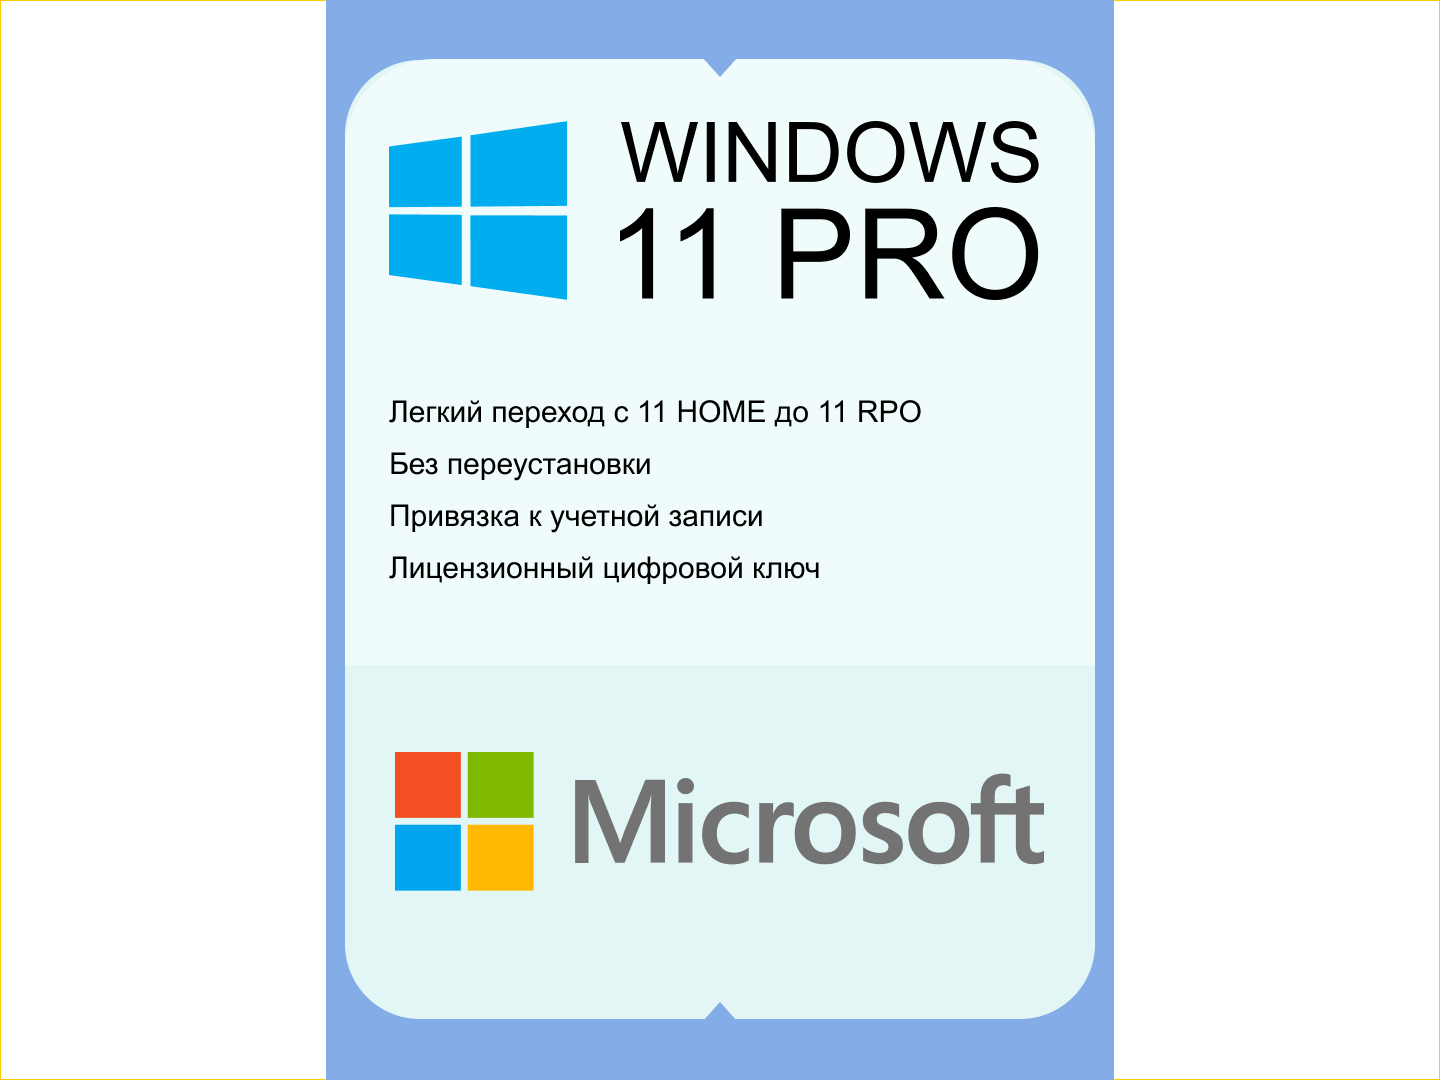 Microsoft Windows 11 PRO. Переход с версии HOME без переустановки. Бессрочный ключ с русским языком